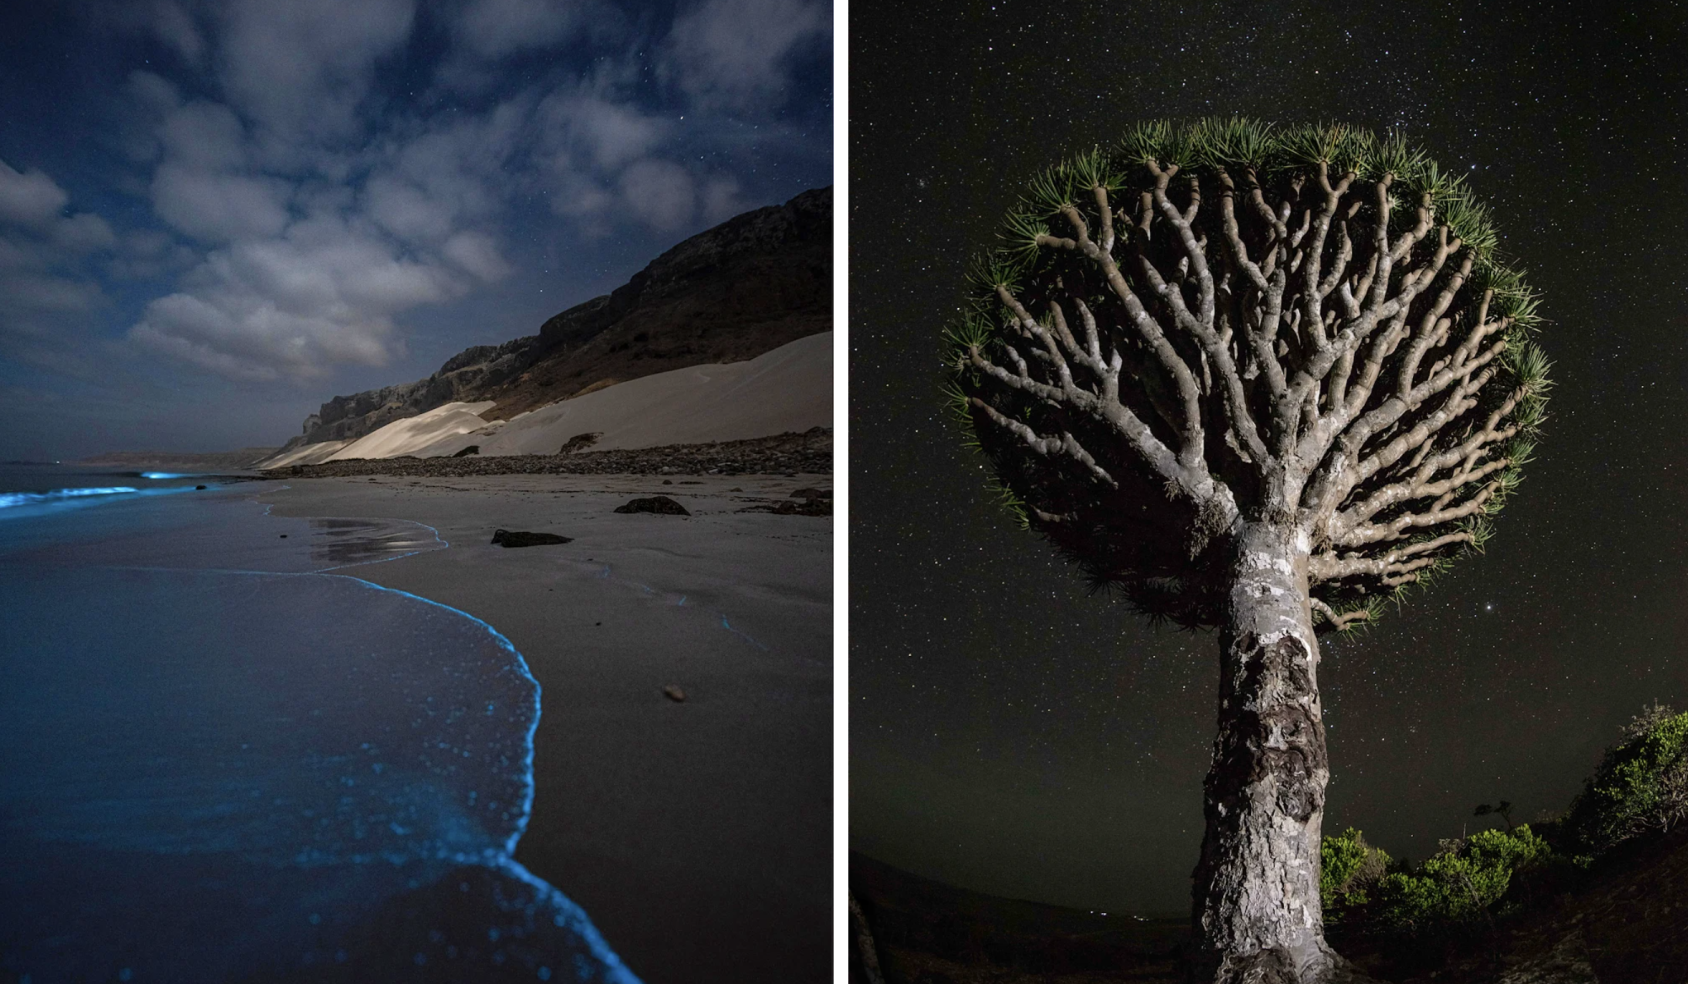 لقطات ليلية لشاطئ وشجرة في مواجهة السماء المرصعة بالنجوم.